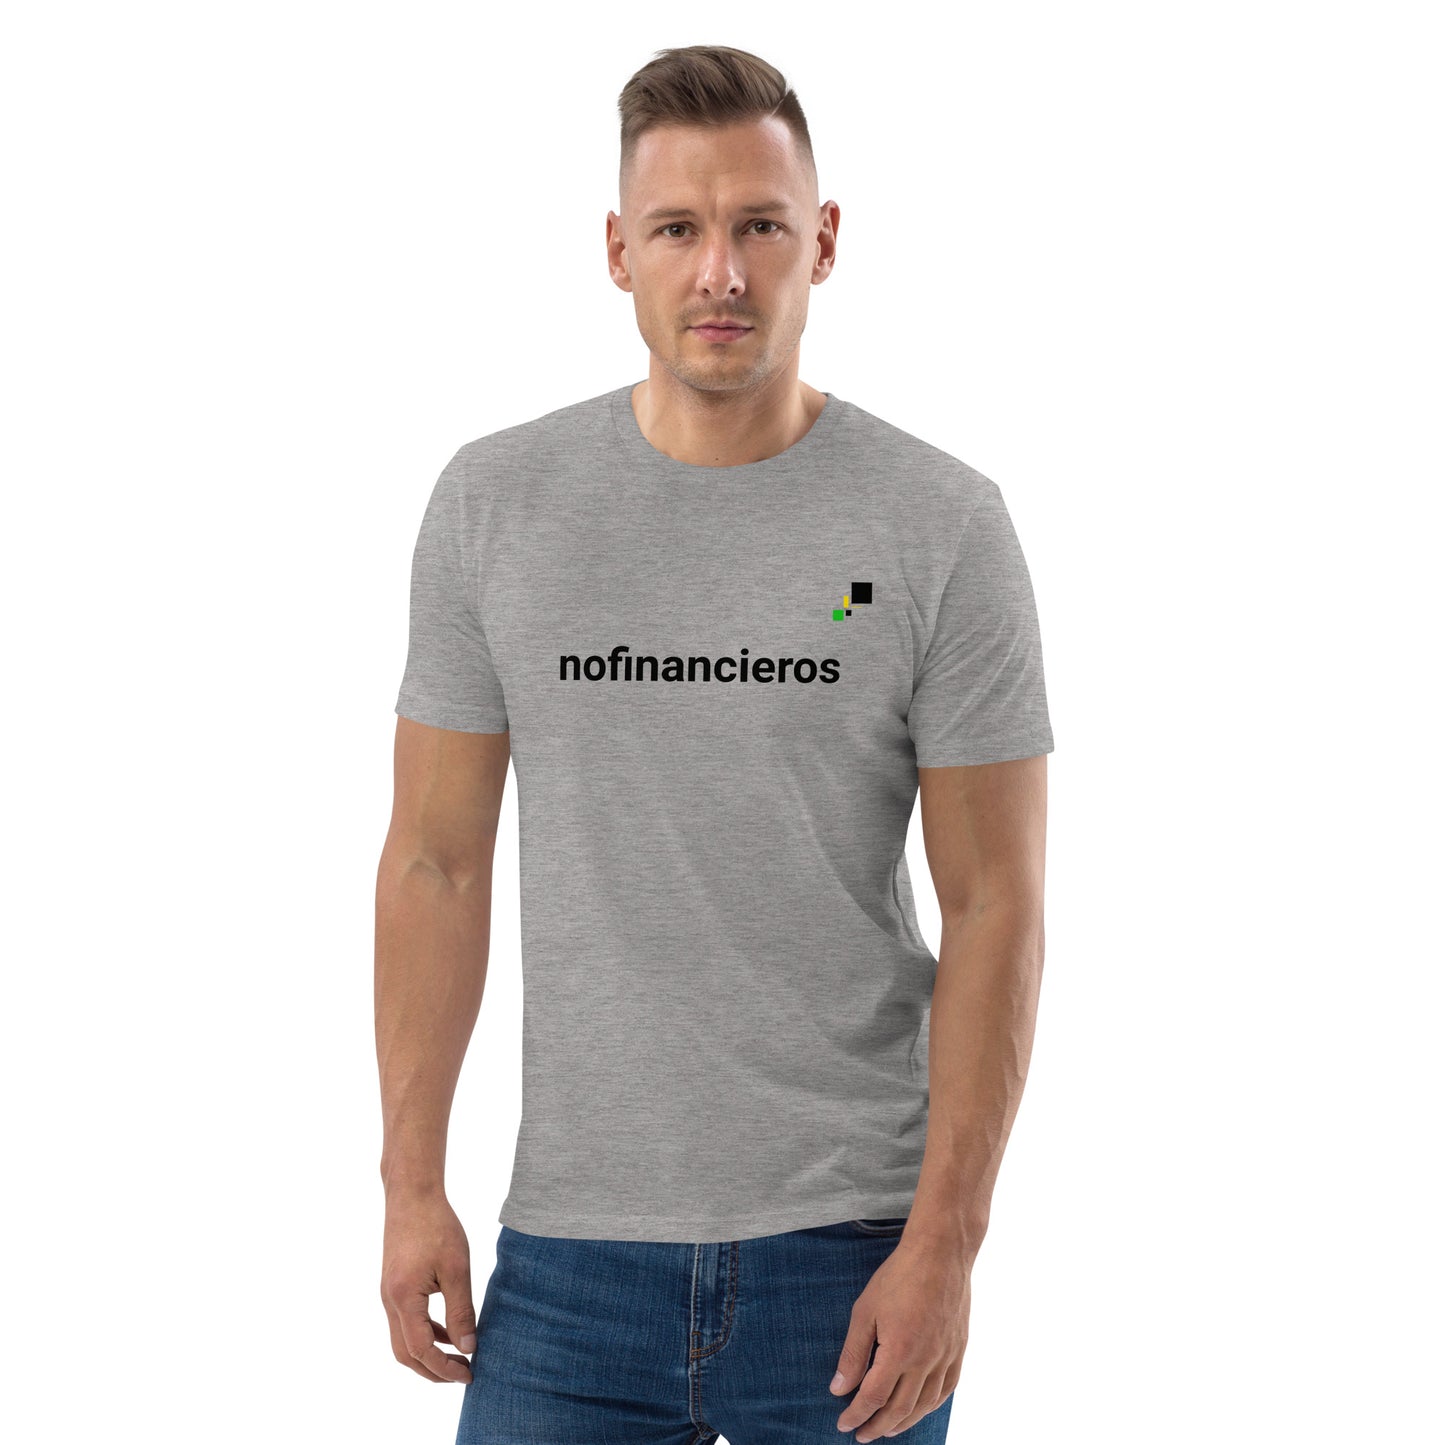 nofinancieros gris/blanca - Camiseta de algodón orgánico unisex